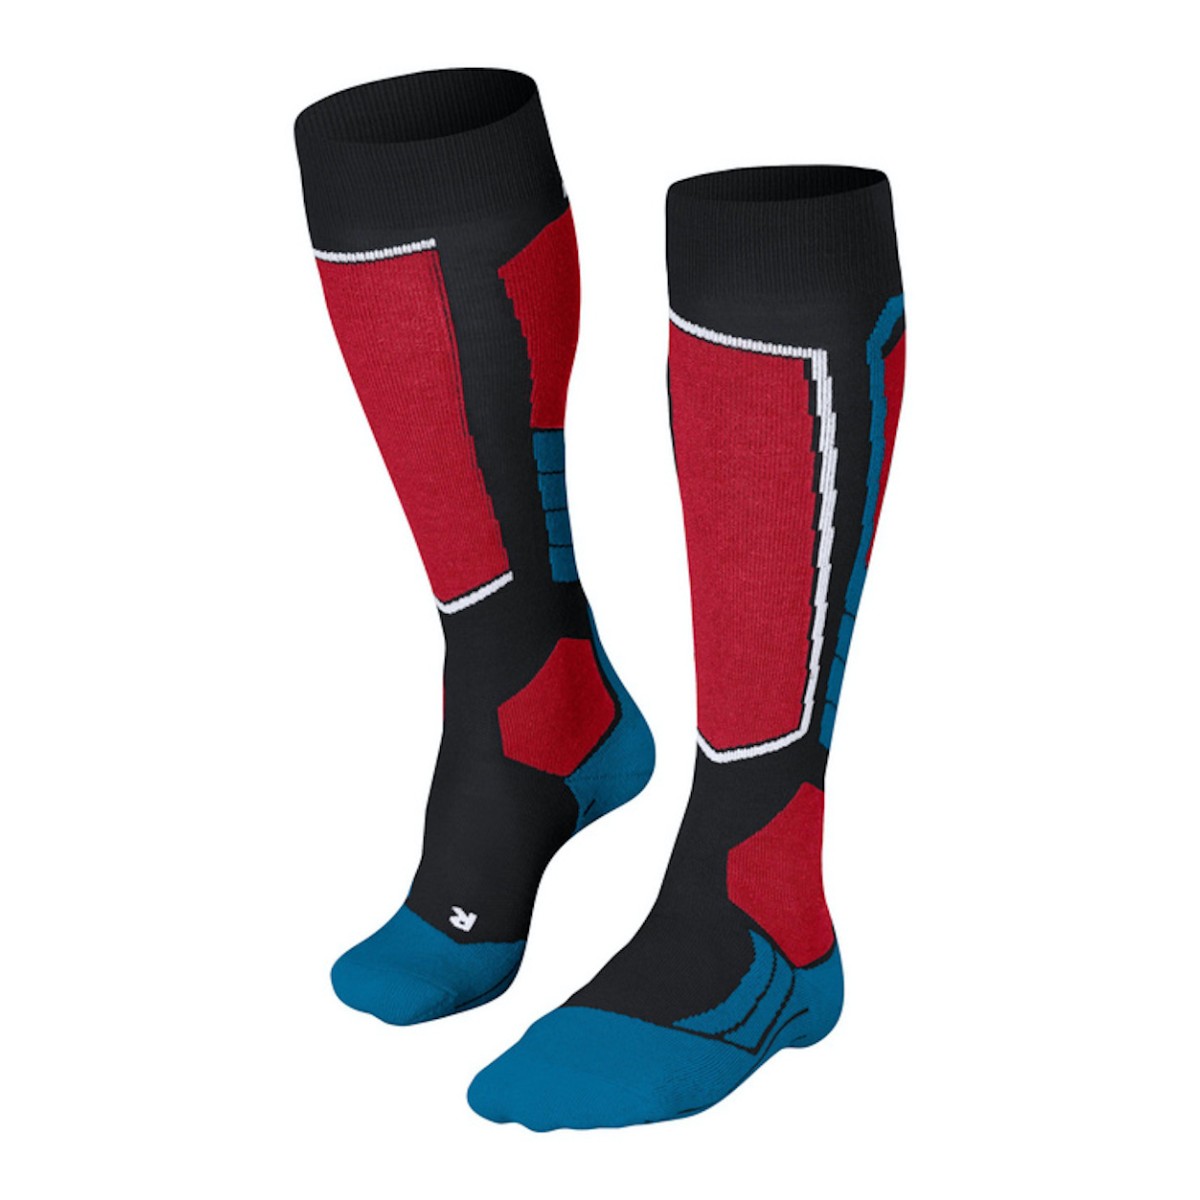 FALKE SK2 SKI socks - red/black/blue